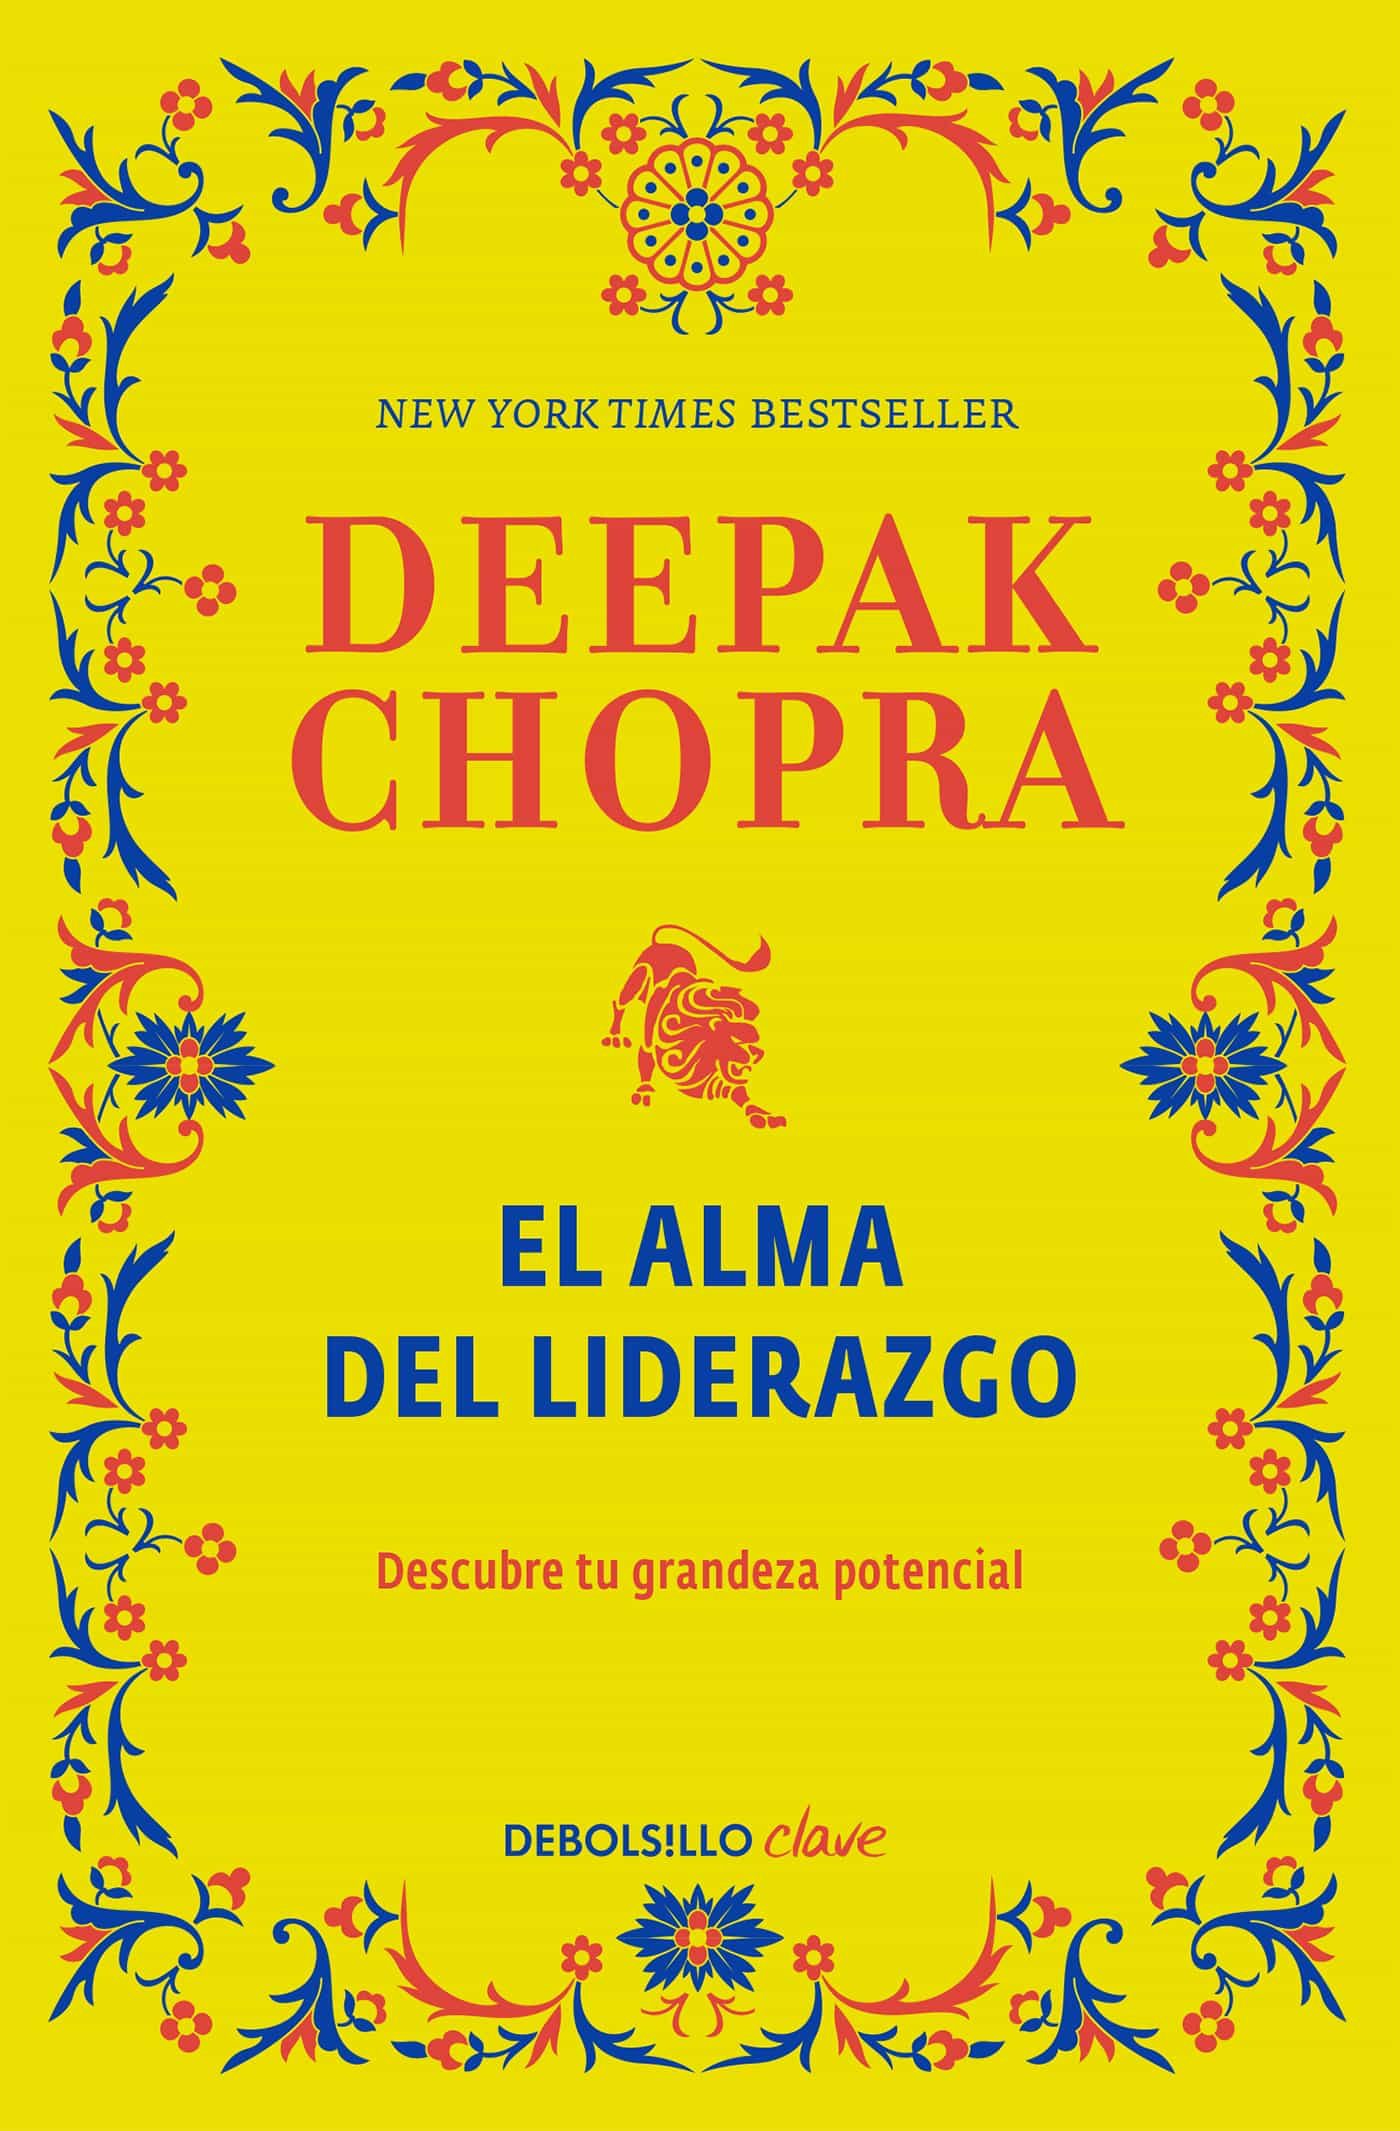 El Libro De Los Secretos Deepak Chopra Pdf